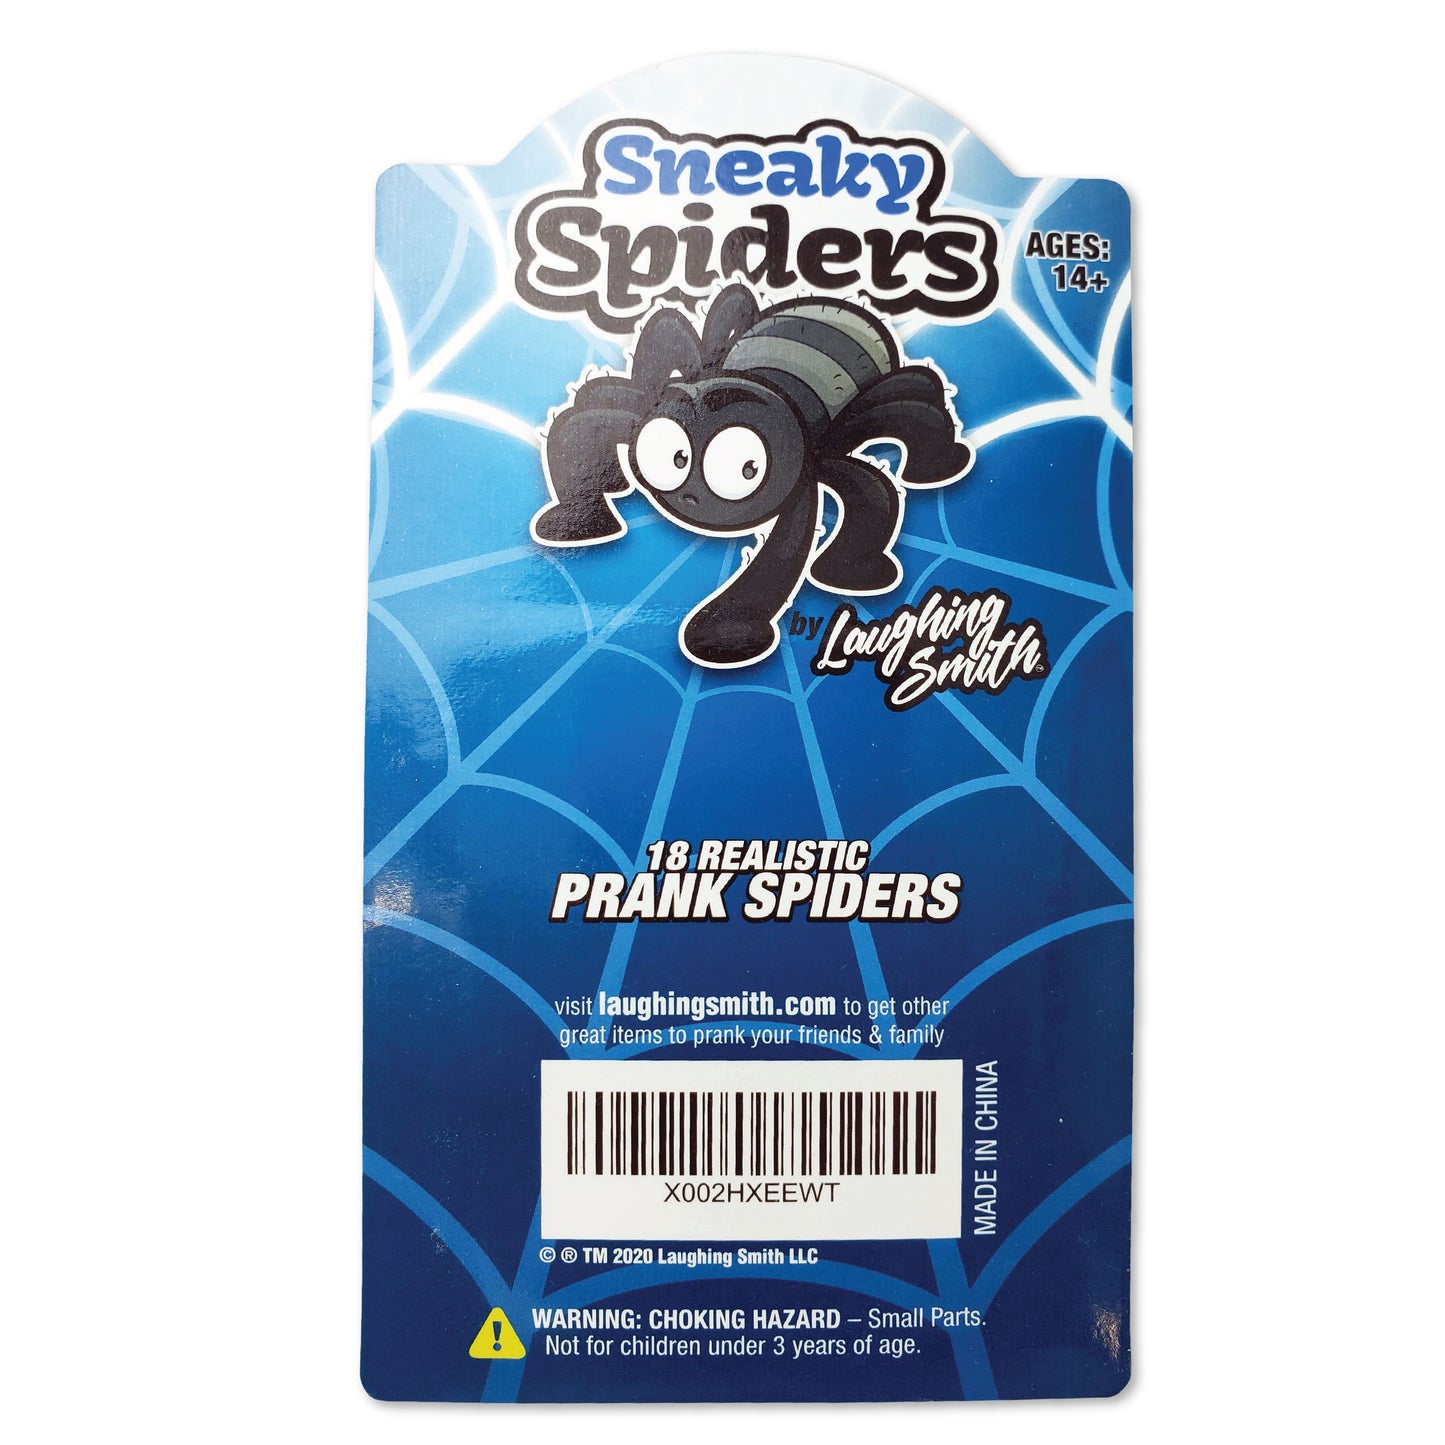 18 x Fake Plastic Spiders